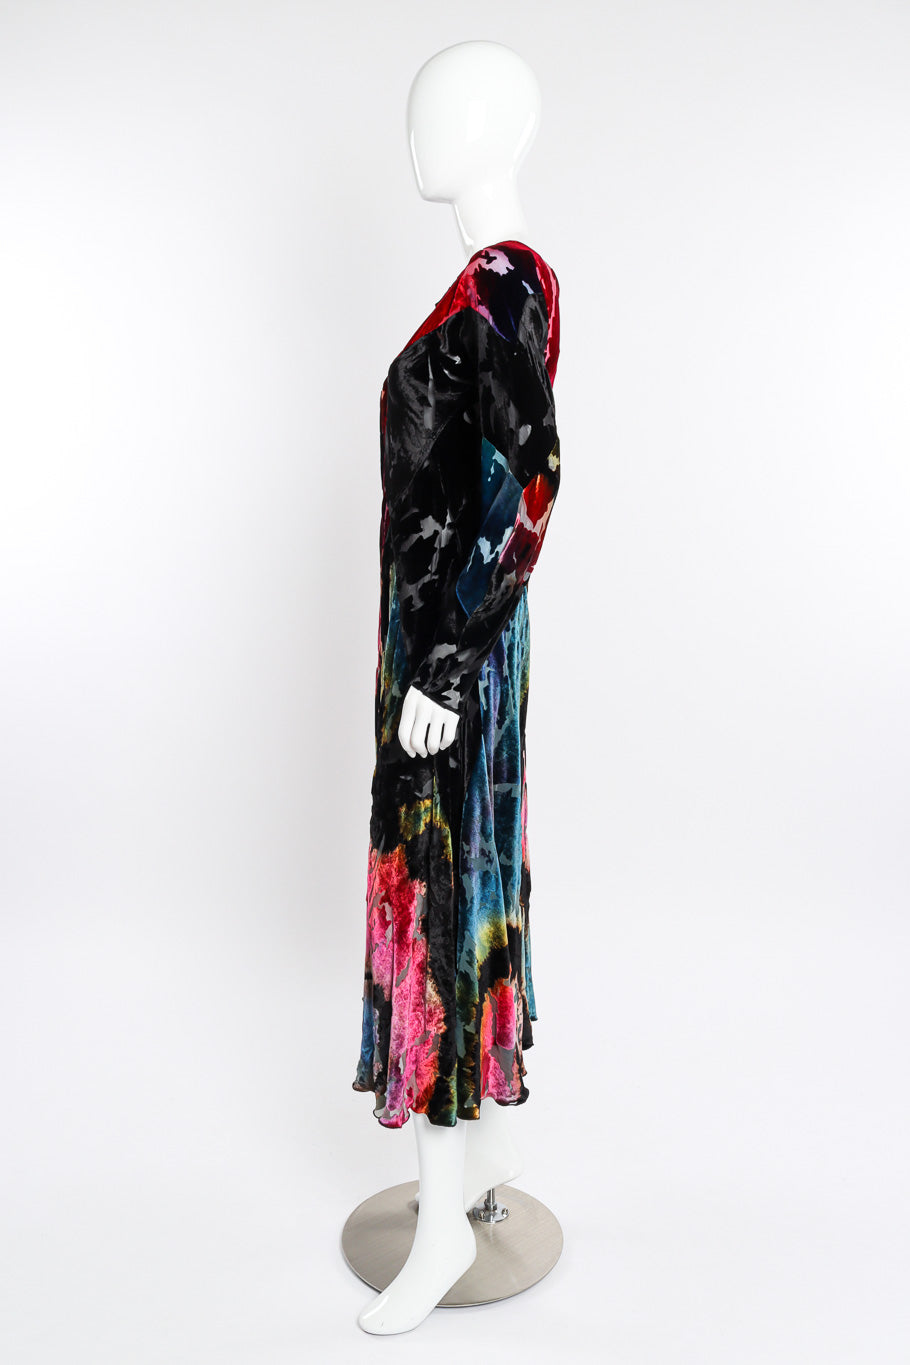 Velvet burnout dress by Carter Smith on mannequin side @recessla